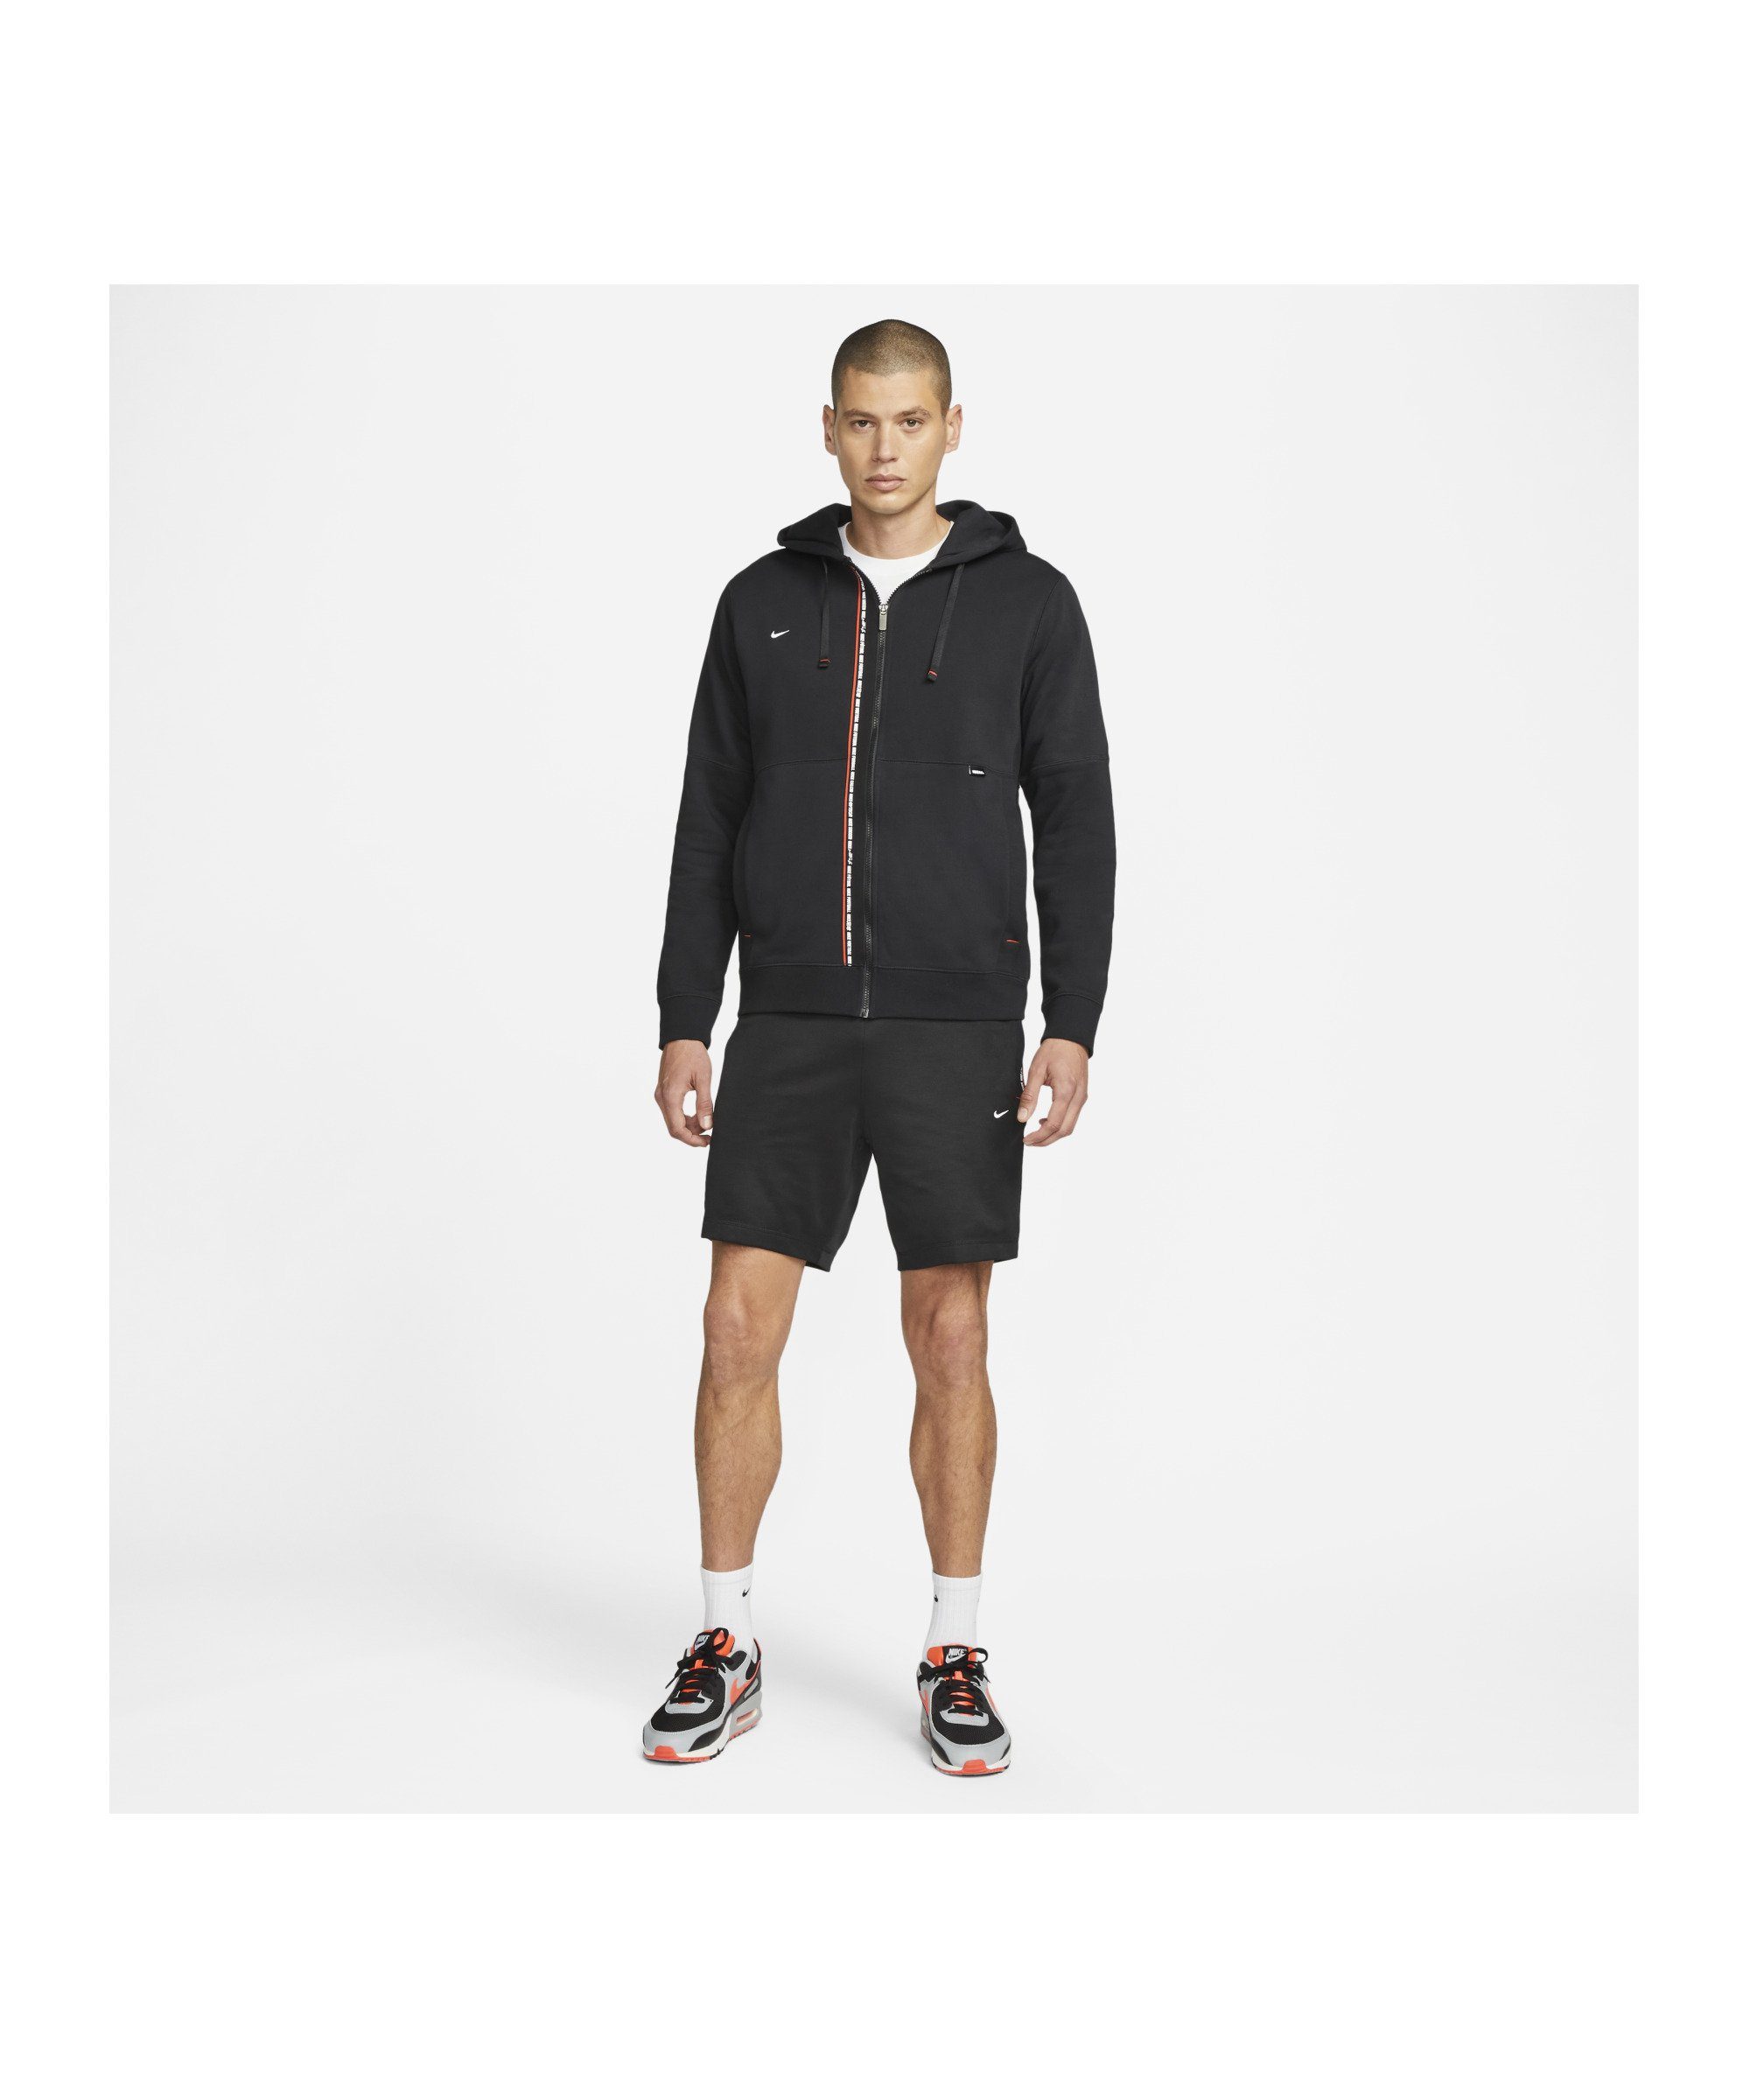 F.C. Sportswear Jogginghose 8in Short Tribuna Nike schwarzrotweiss